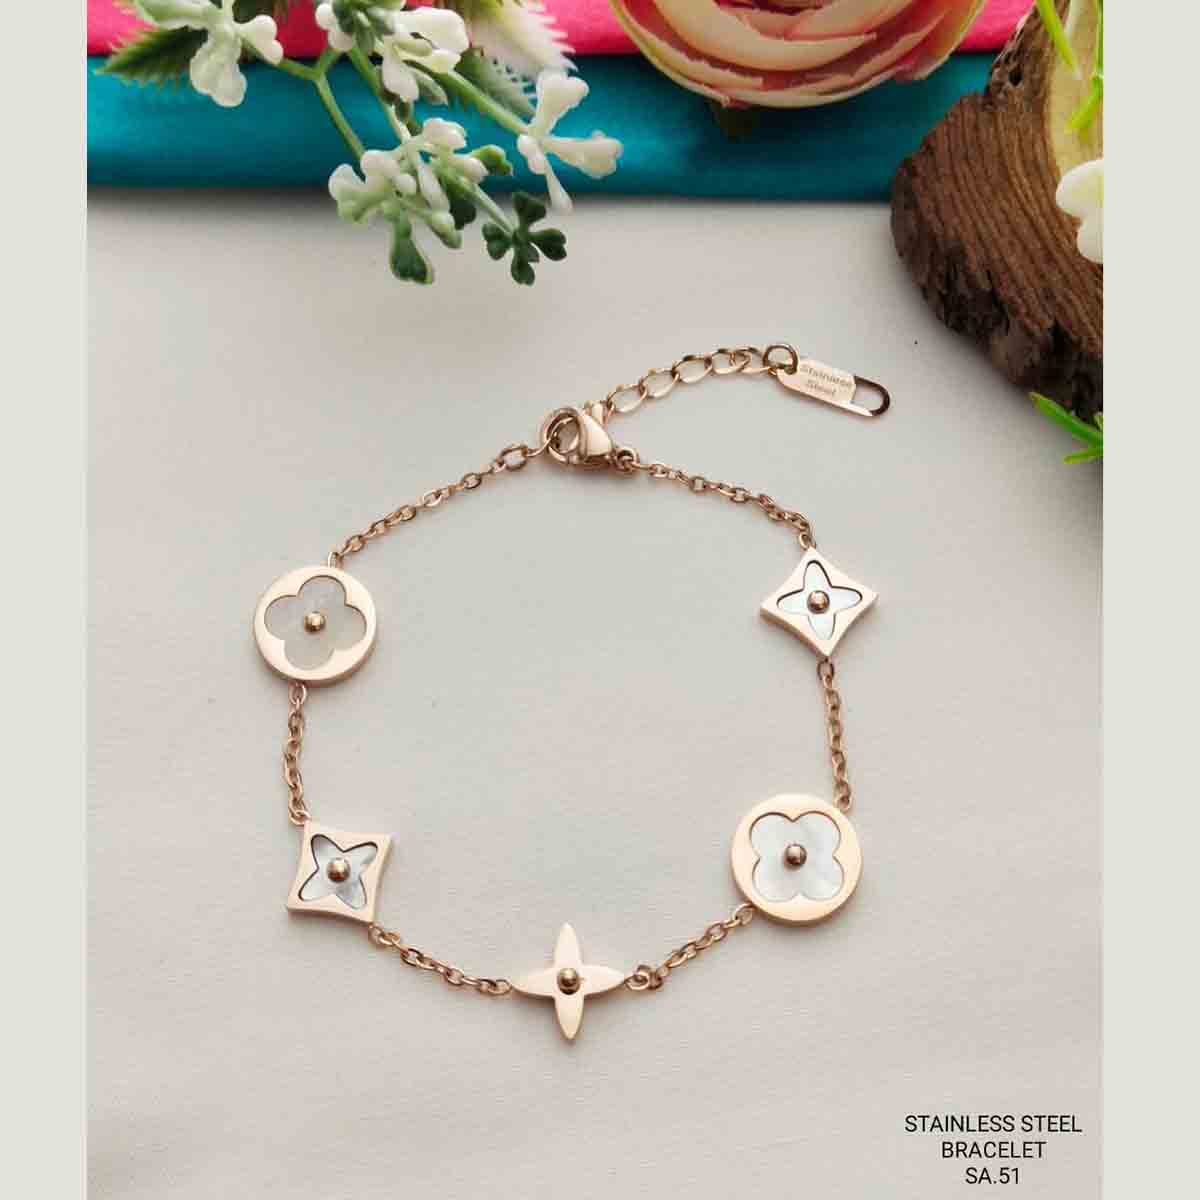 Louis Vuitton Pandantif Star Blossom Double Necklace Pink Gold